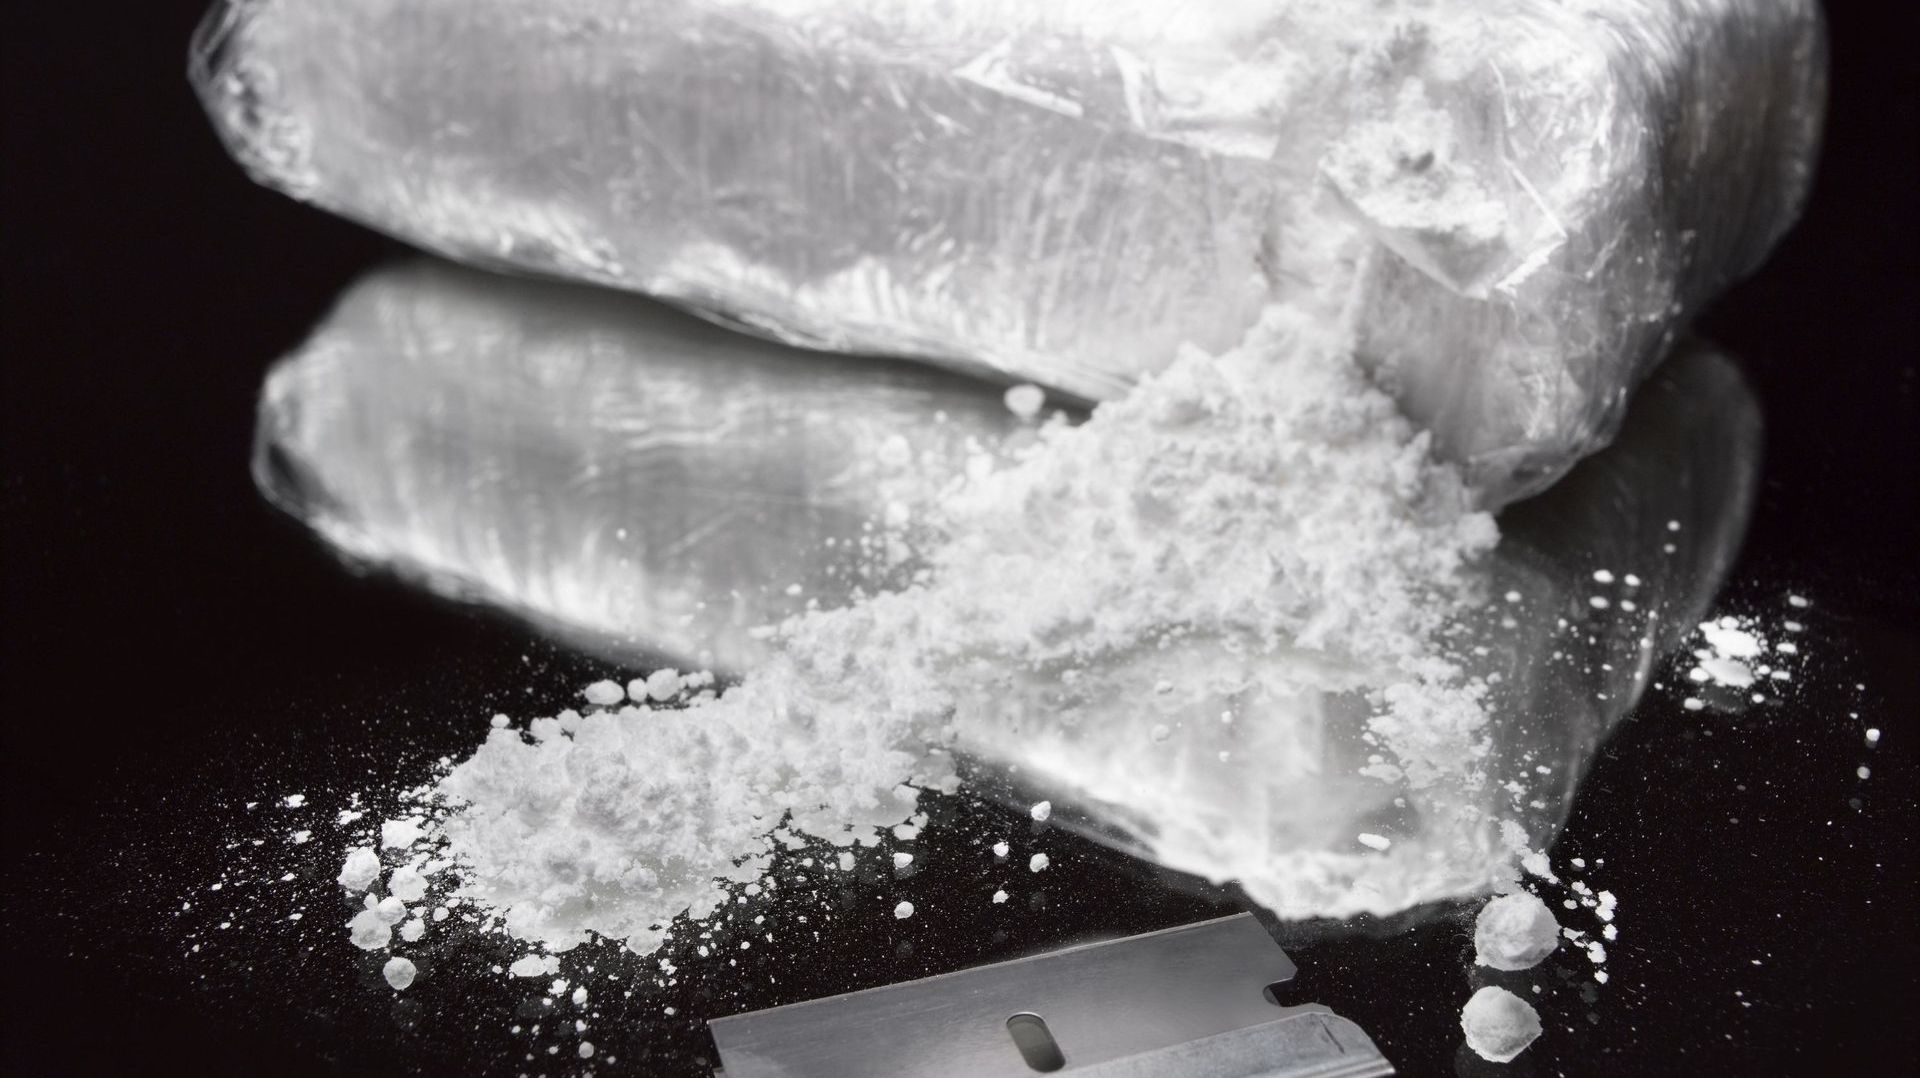 Six Britanniques qui stockaient une demi-tonne de cocaïne dans des Airbnb arrêtés à Anvers